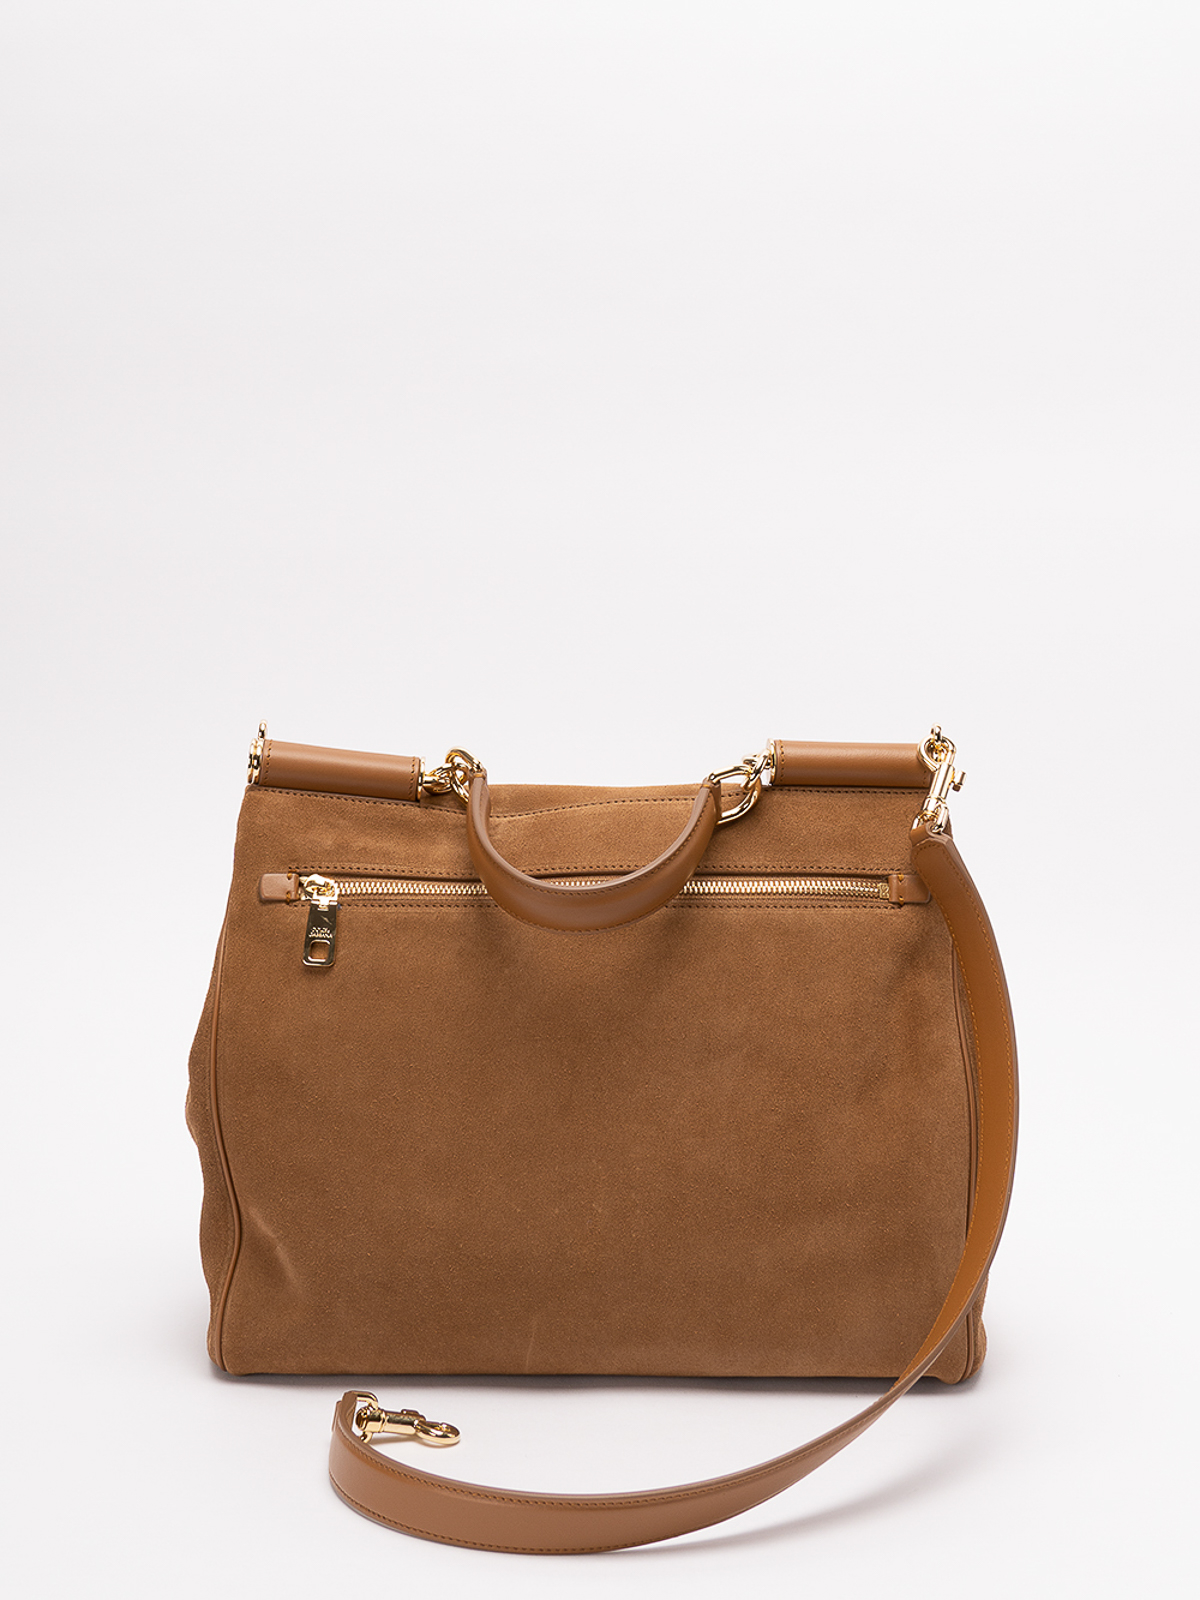 Dolce & Gabbana Sicily Medium Handbag